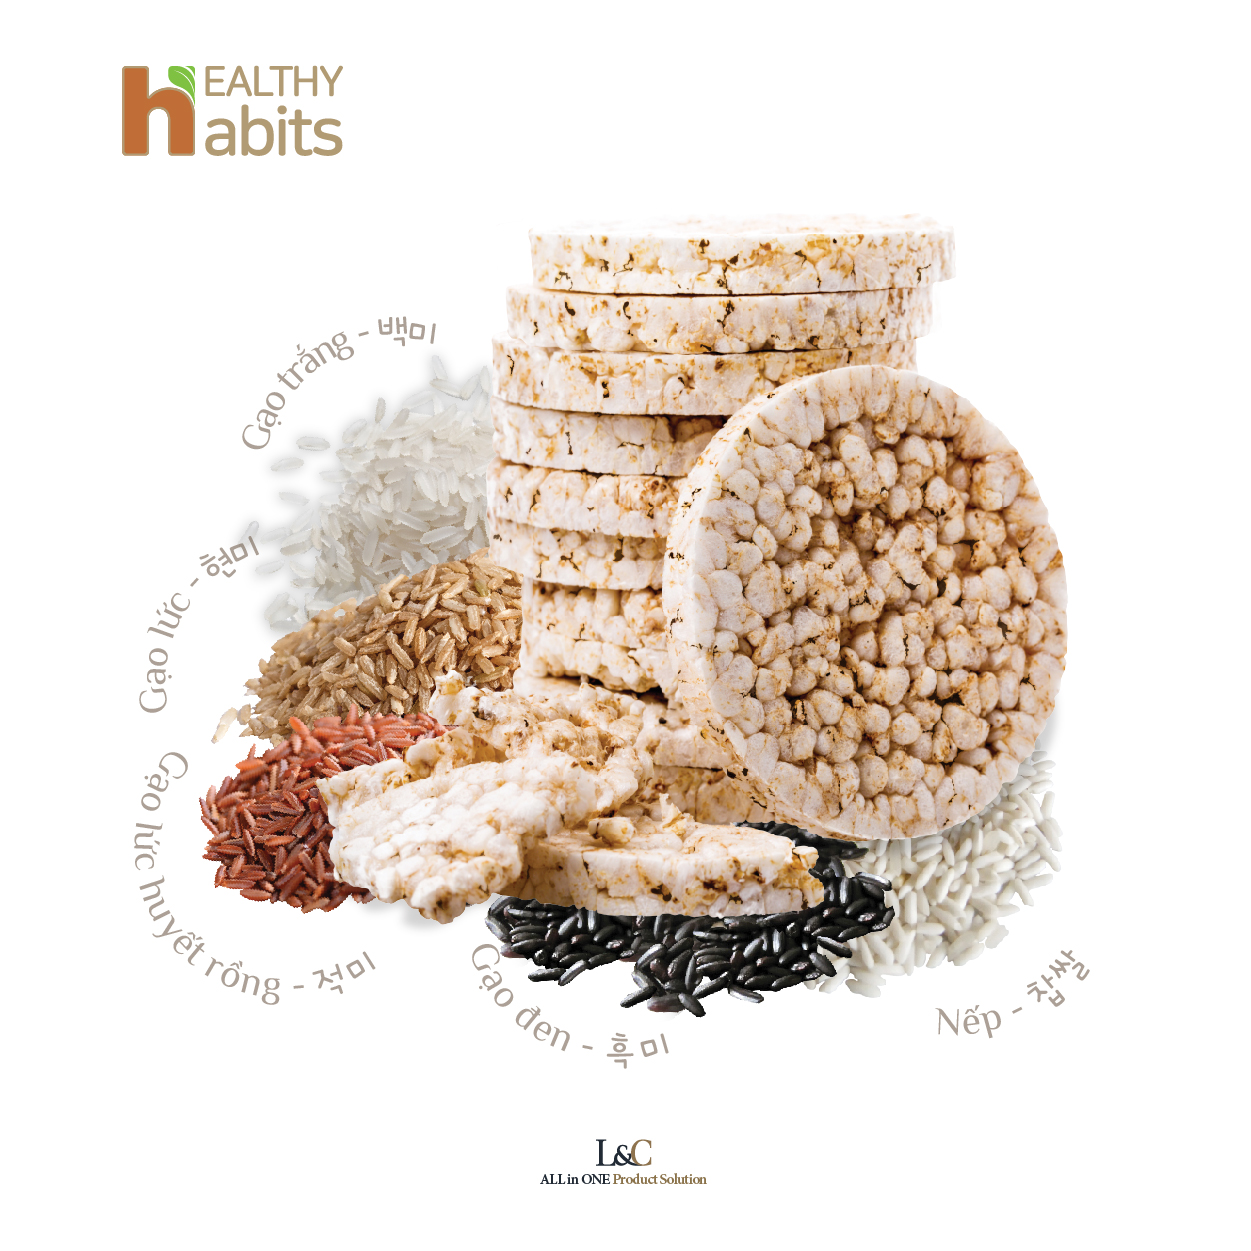 Bánh Gạo Lức Ngũ Cốc Nguyên Hạt Healthy habits - bánh gạo Hàn Quốc - hỗ trợ chế độ ăn Kiêng, GYM, EATCLEAN